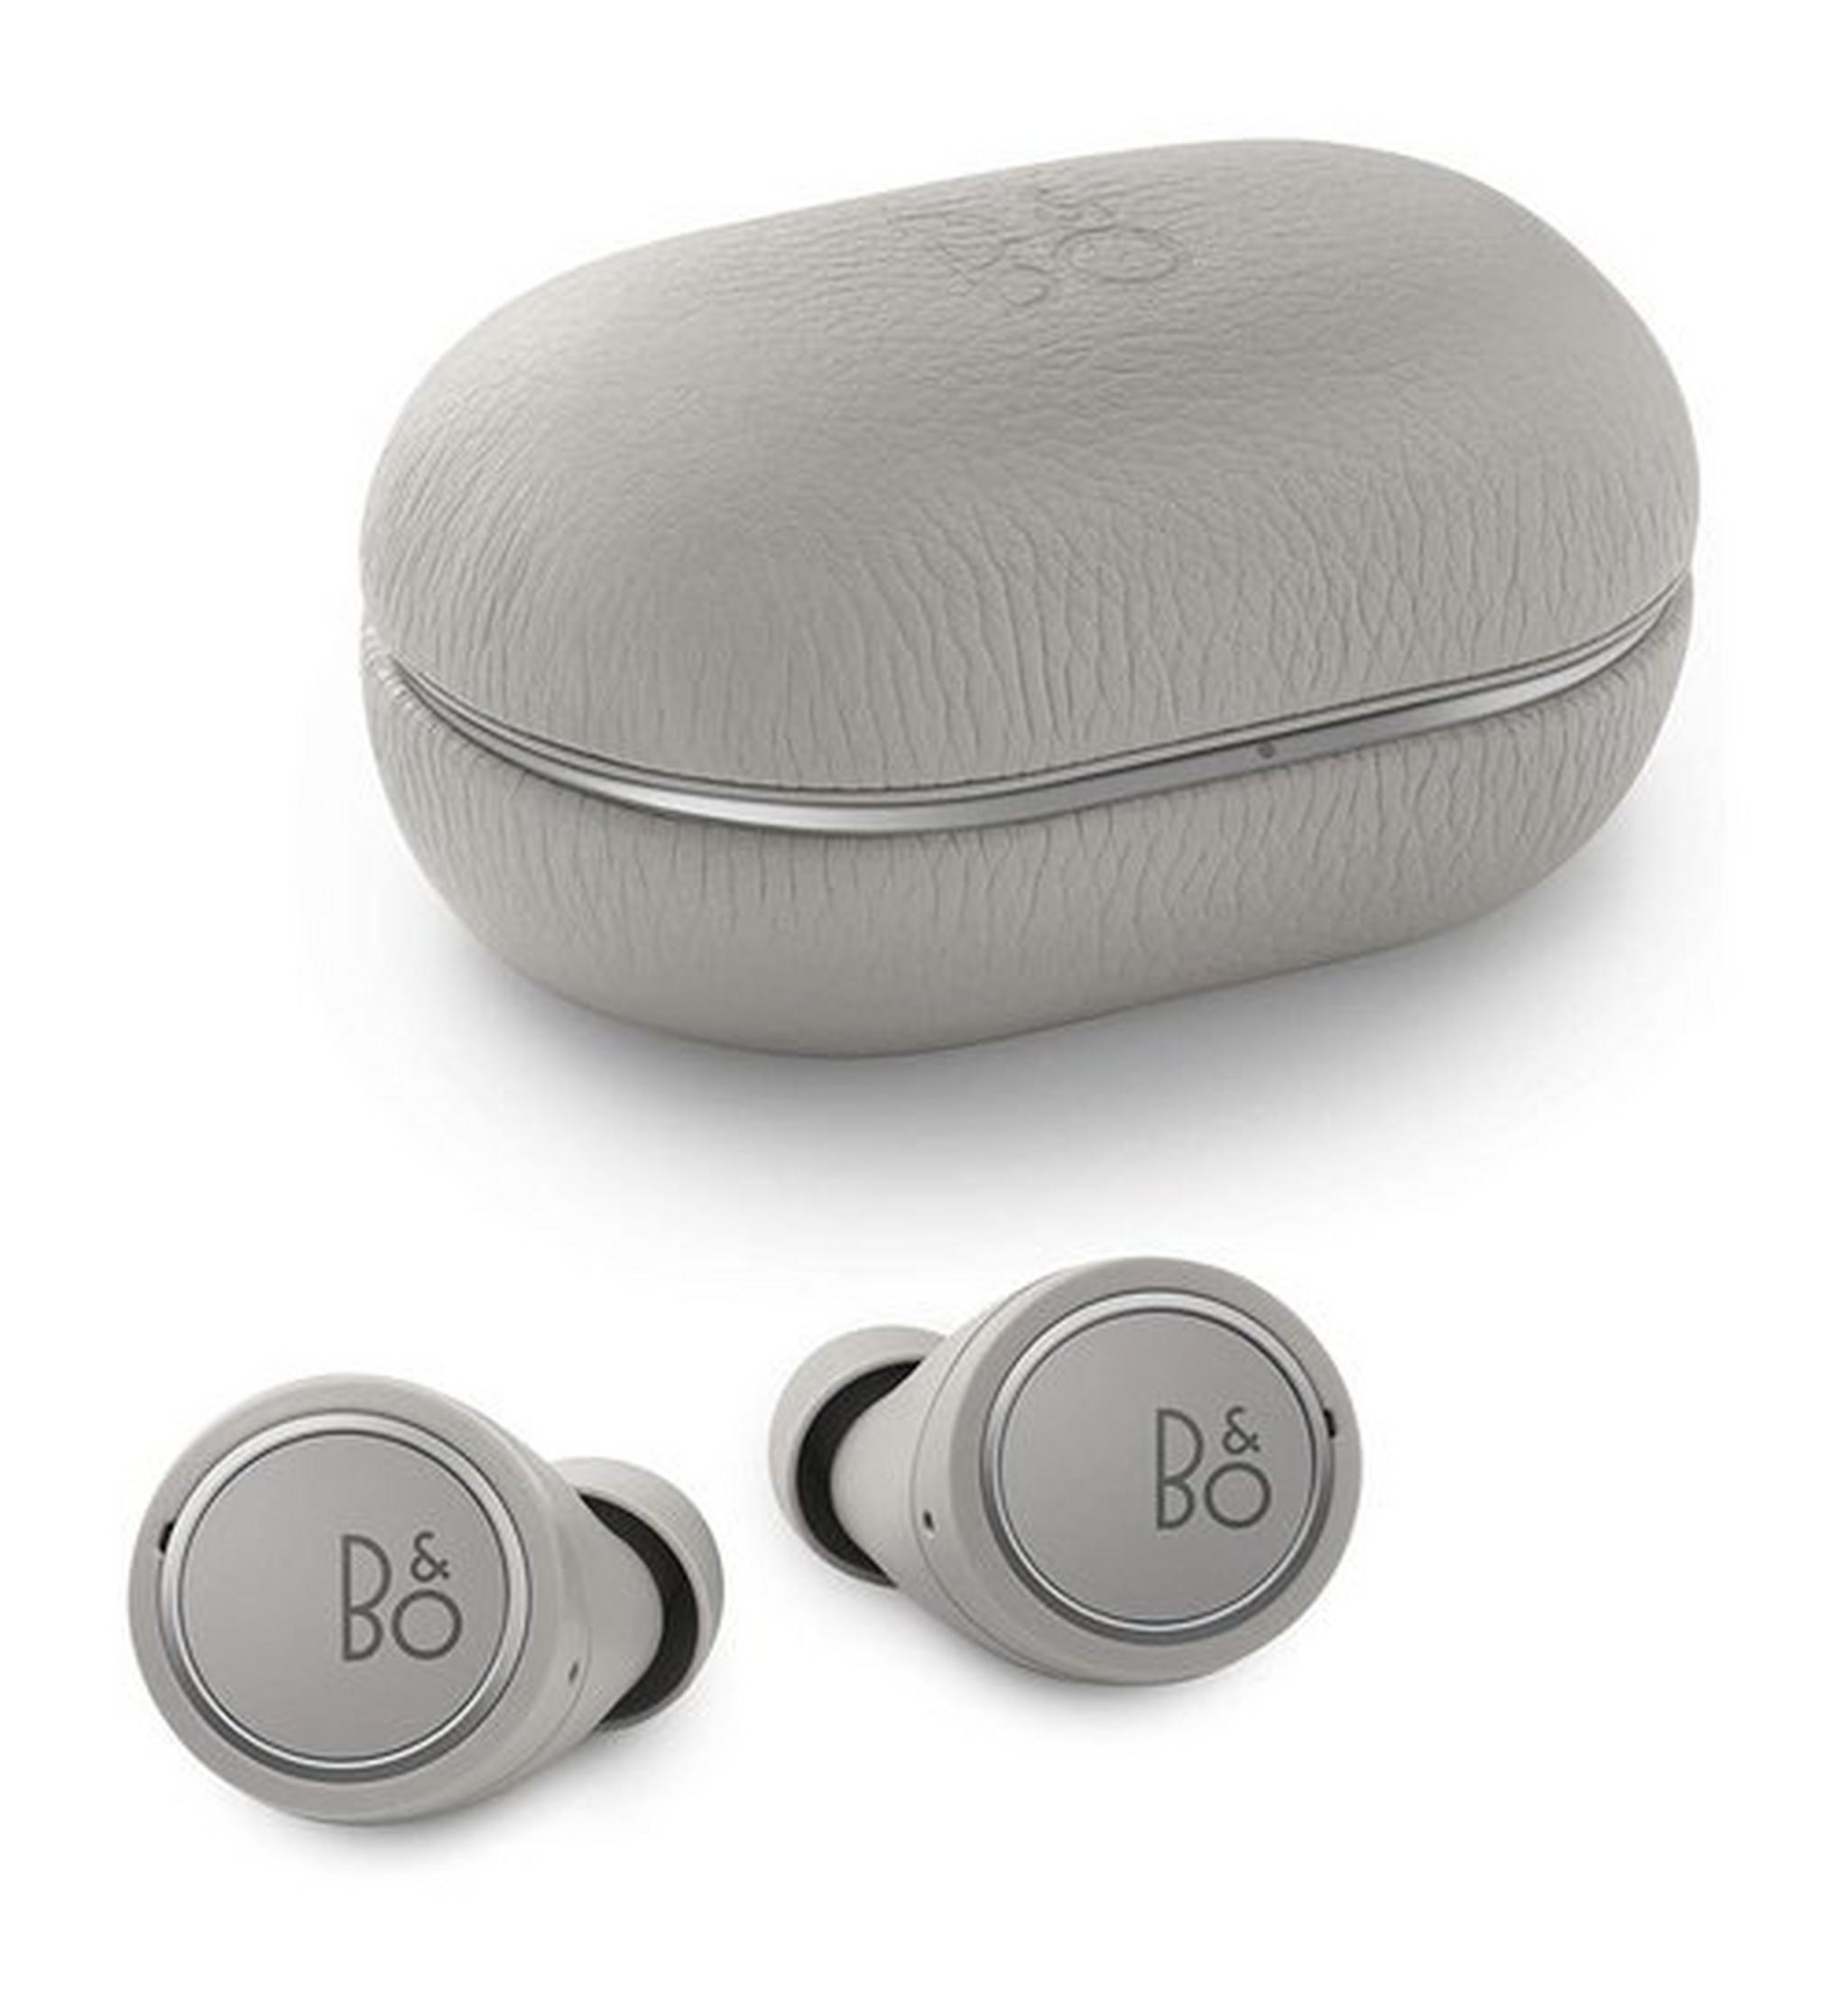 Bang & Olufsen Beoplay E8 3rd Generation True Wireless in-Ear Bluetooth Earphones - Grey